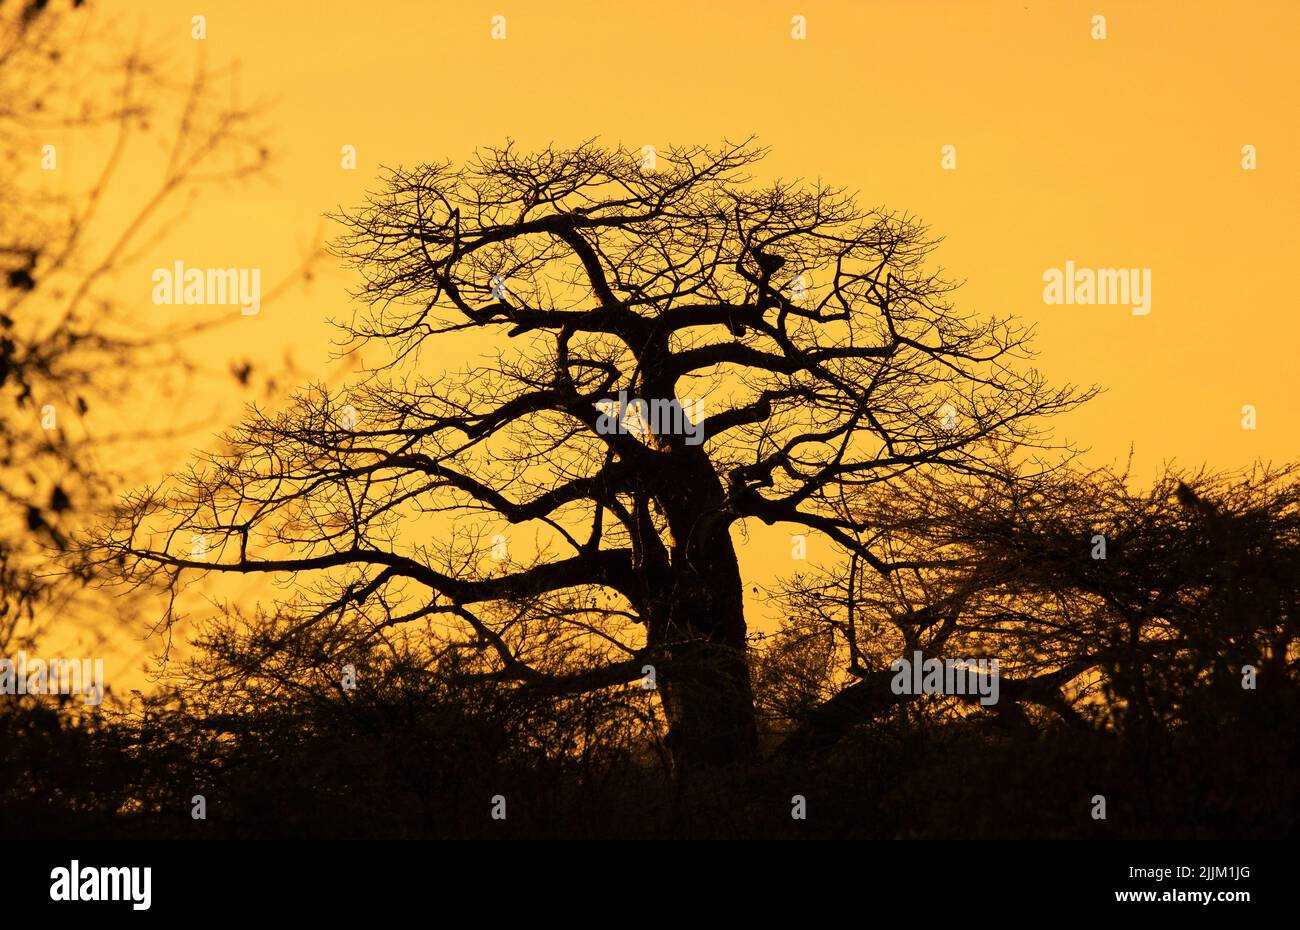 La forma distintiva del famoso albero 'rovesciato' delle savane africane è modellata nell'ultima luce dorata del giorno. Foto Stock